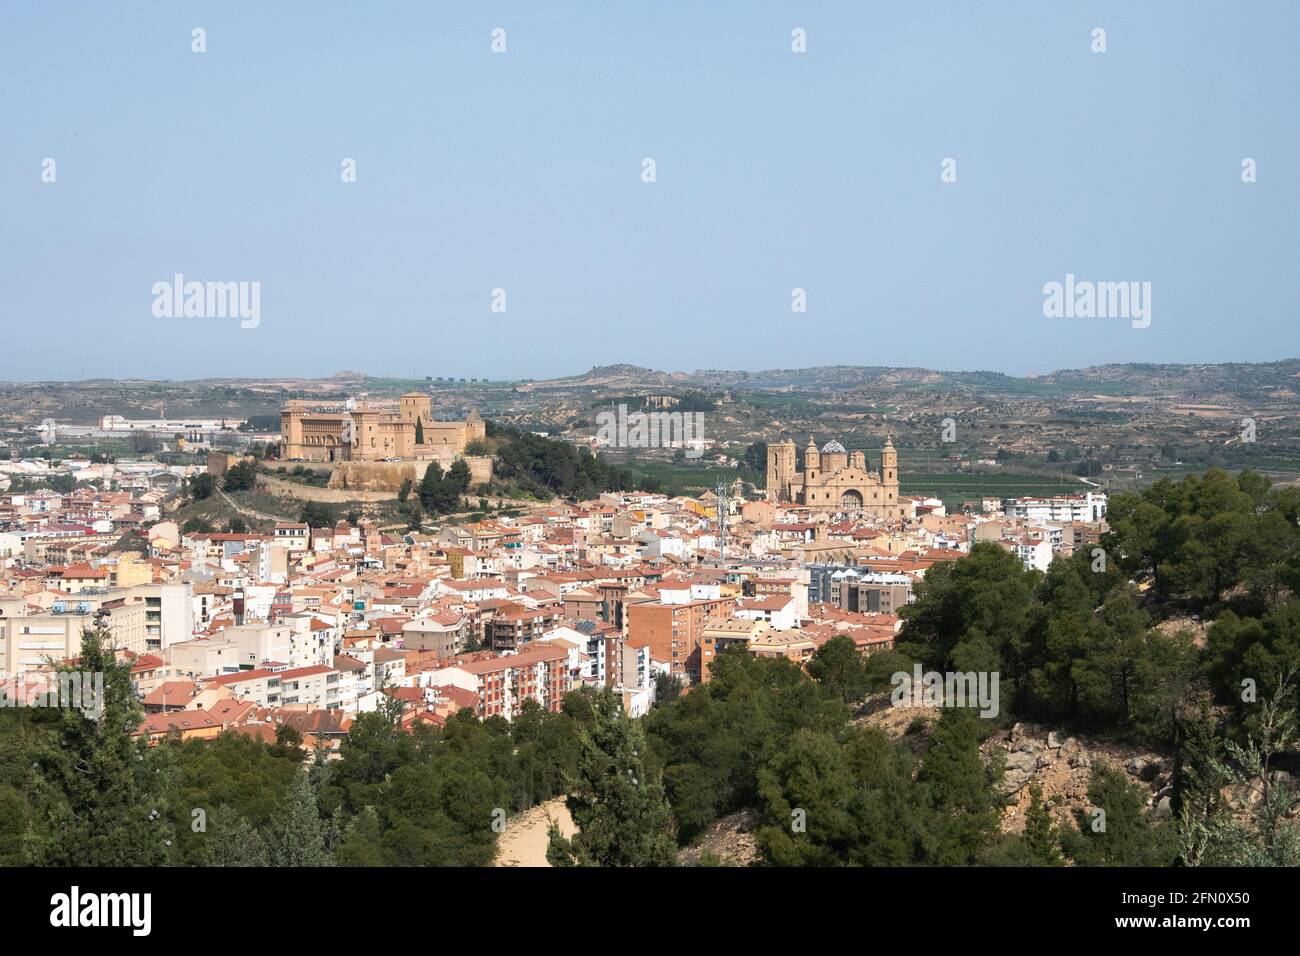 General view of the city of Alcañiz in Teruel, Spain Stock Photo